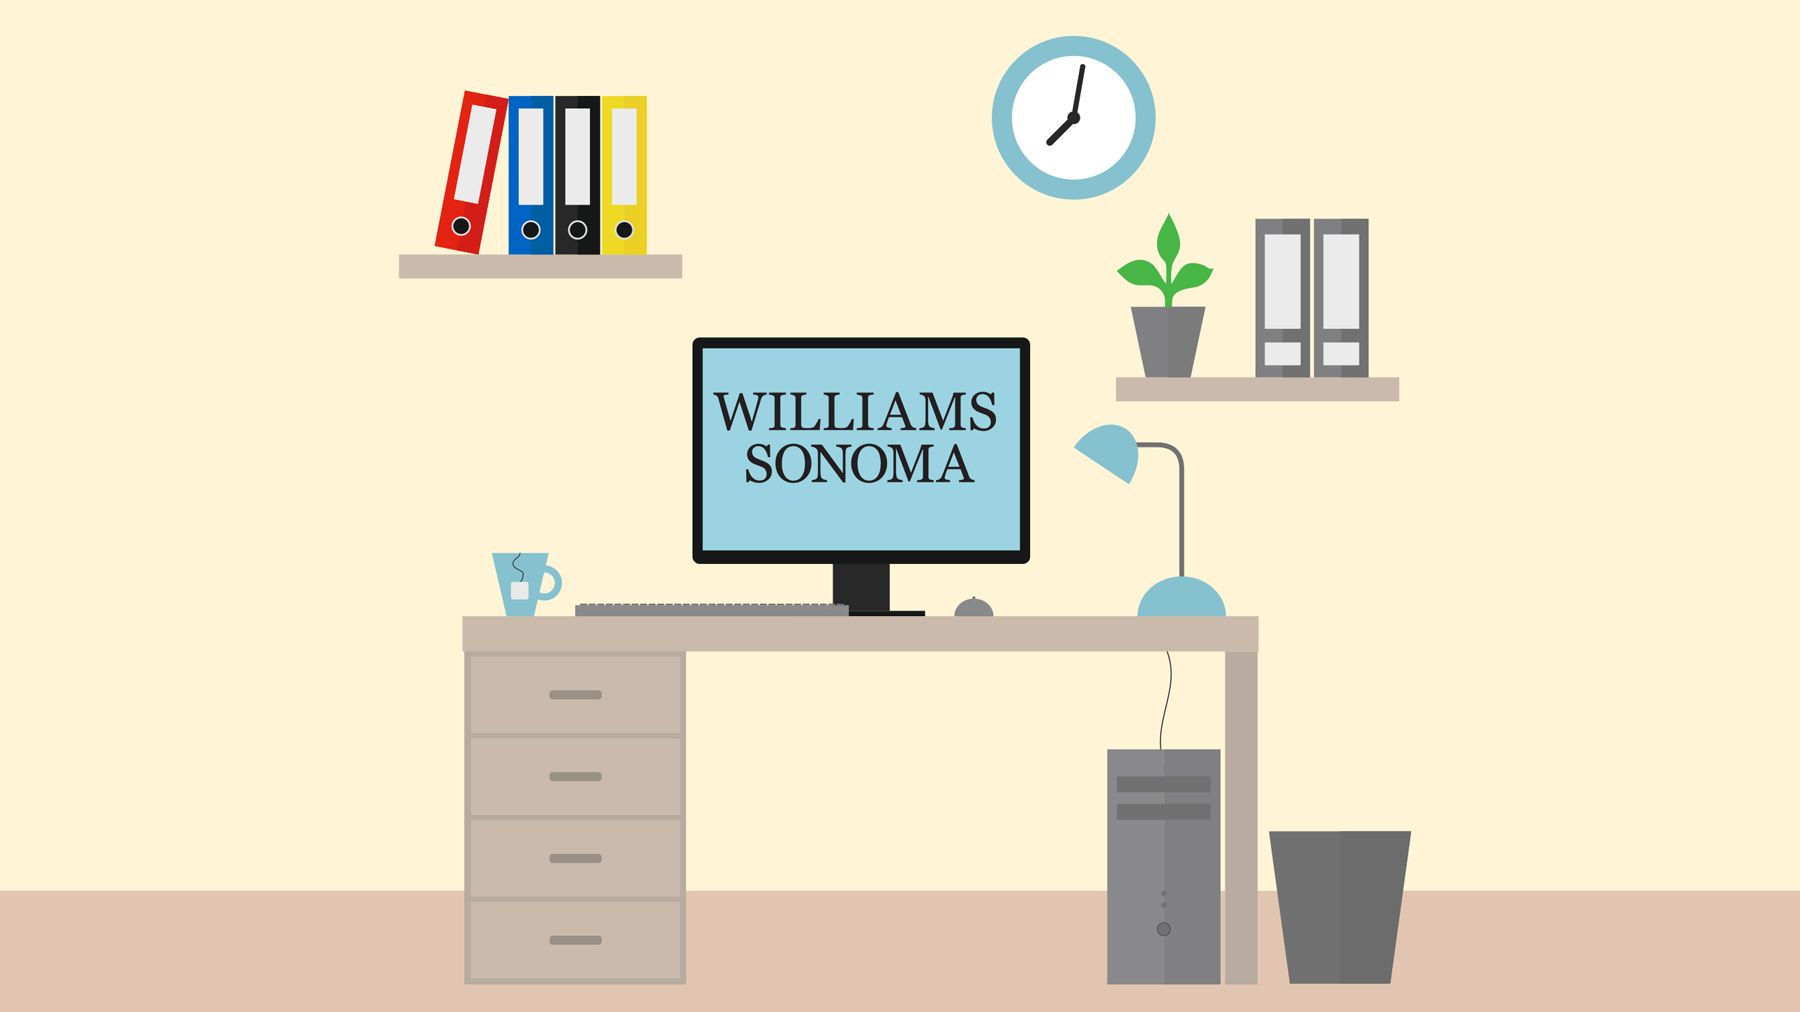 Williams Sonoma ansætter tusindvis af sæsonarbejdere fra hjemmet inden ferien